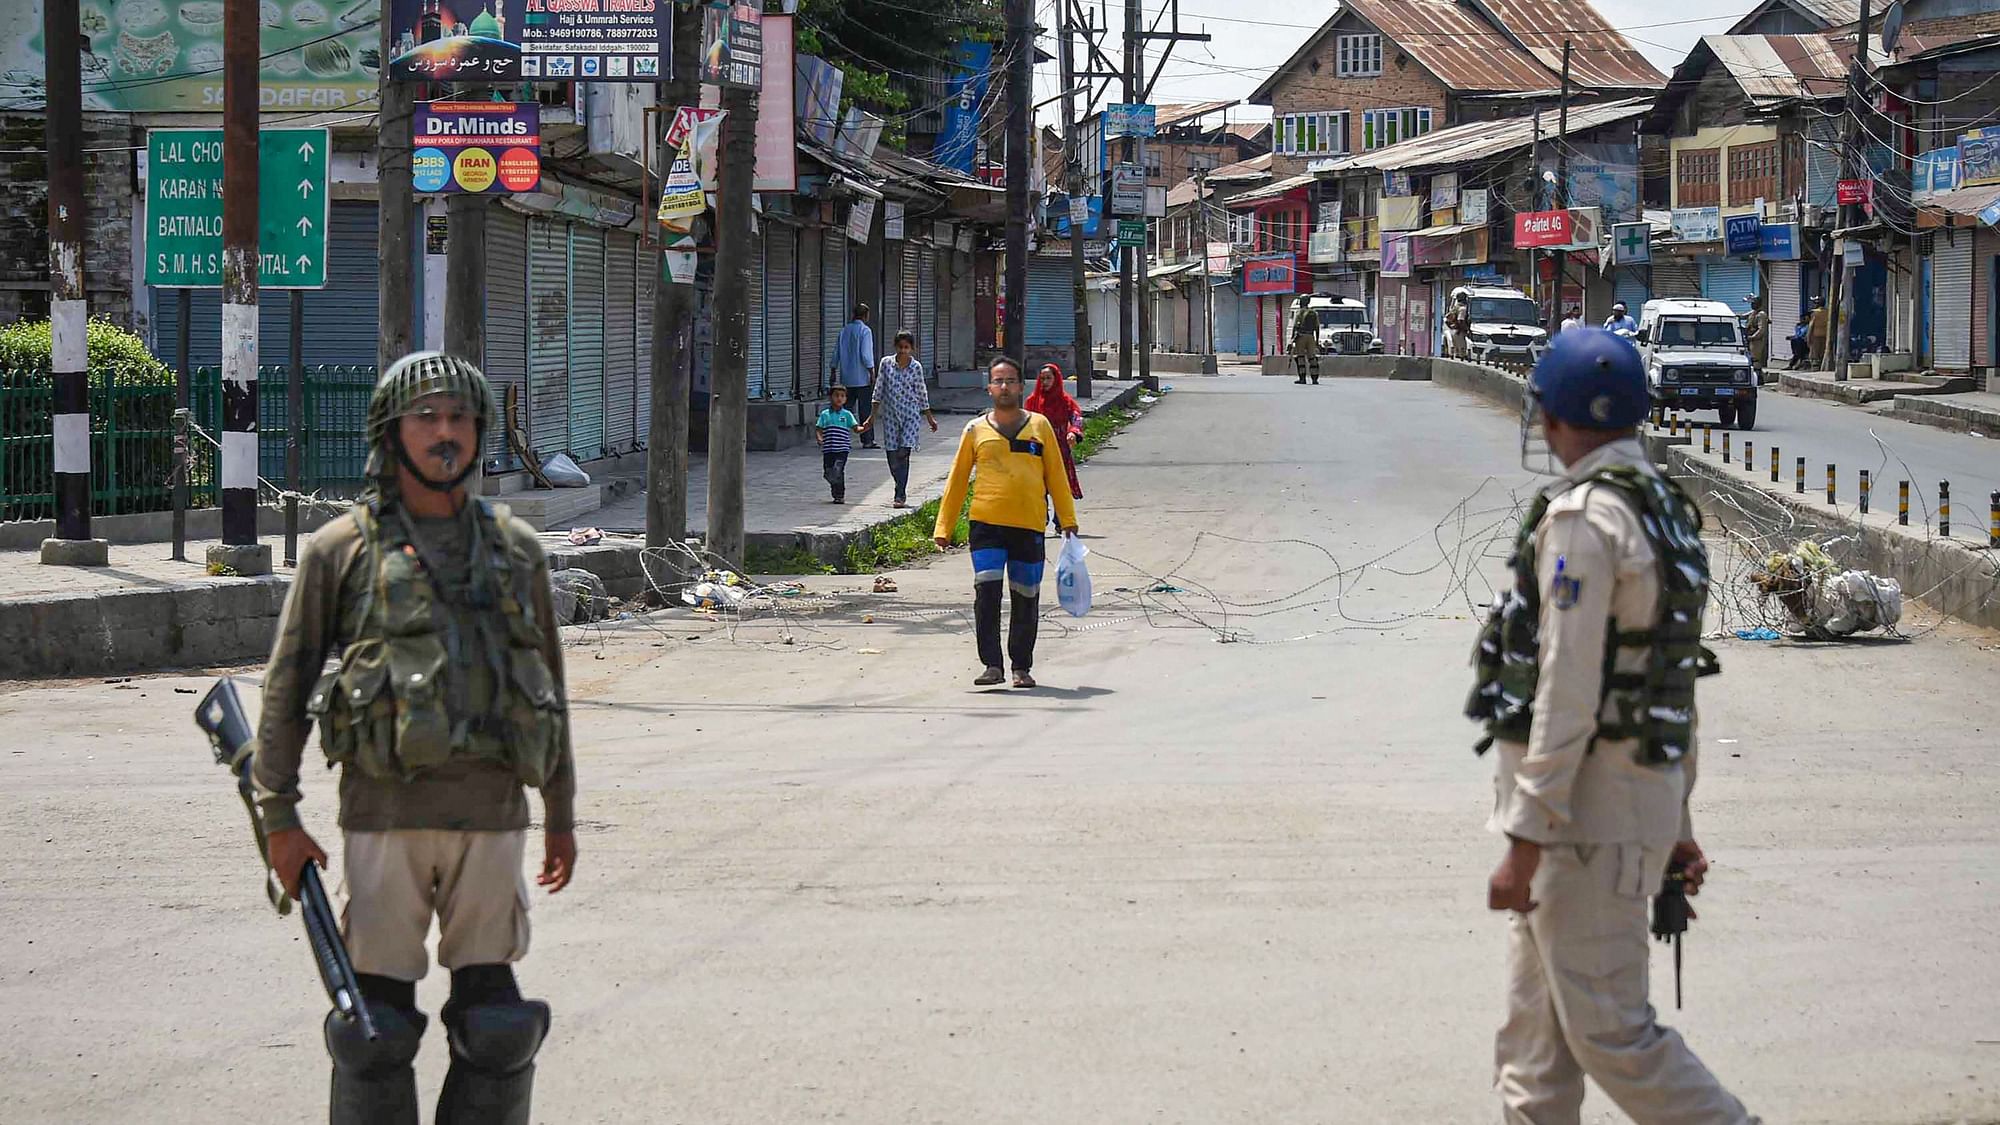 विदेशी मीडिया भी जम्मू-कश्मीर में विरोध प्रदर्शन की खबरों से अनजान नहीं है